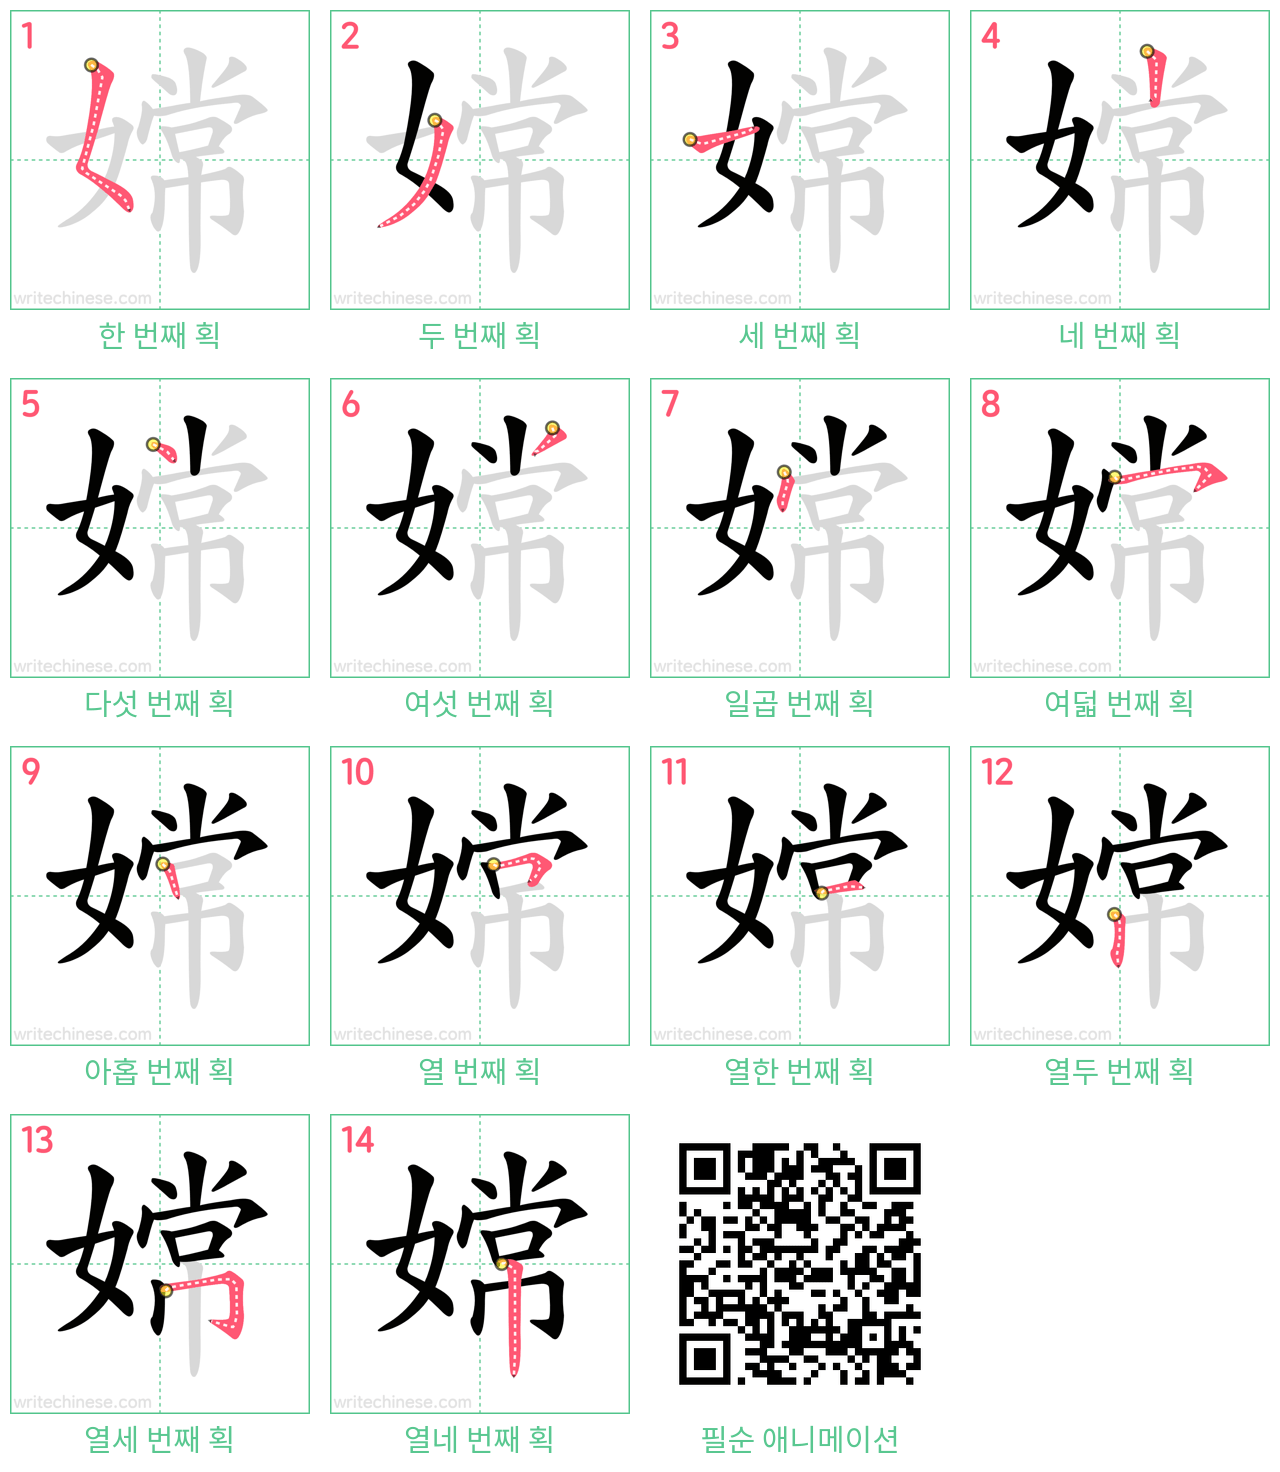 嫦 step-by-step stroke order diagrams